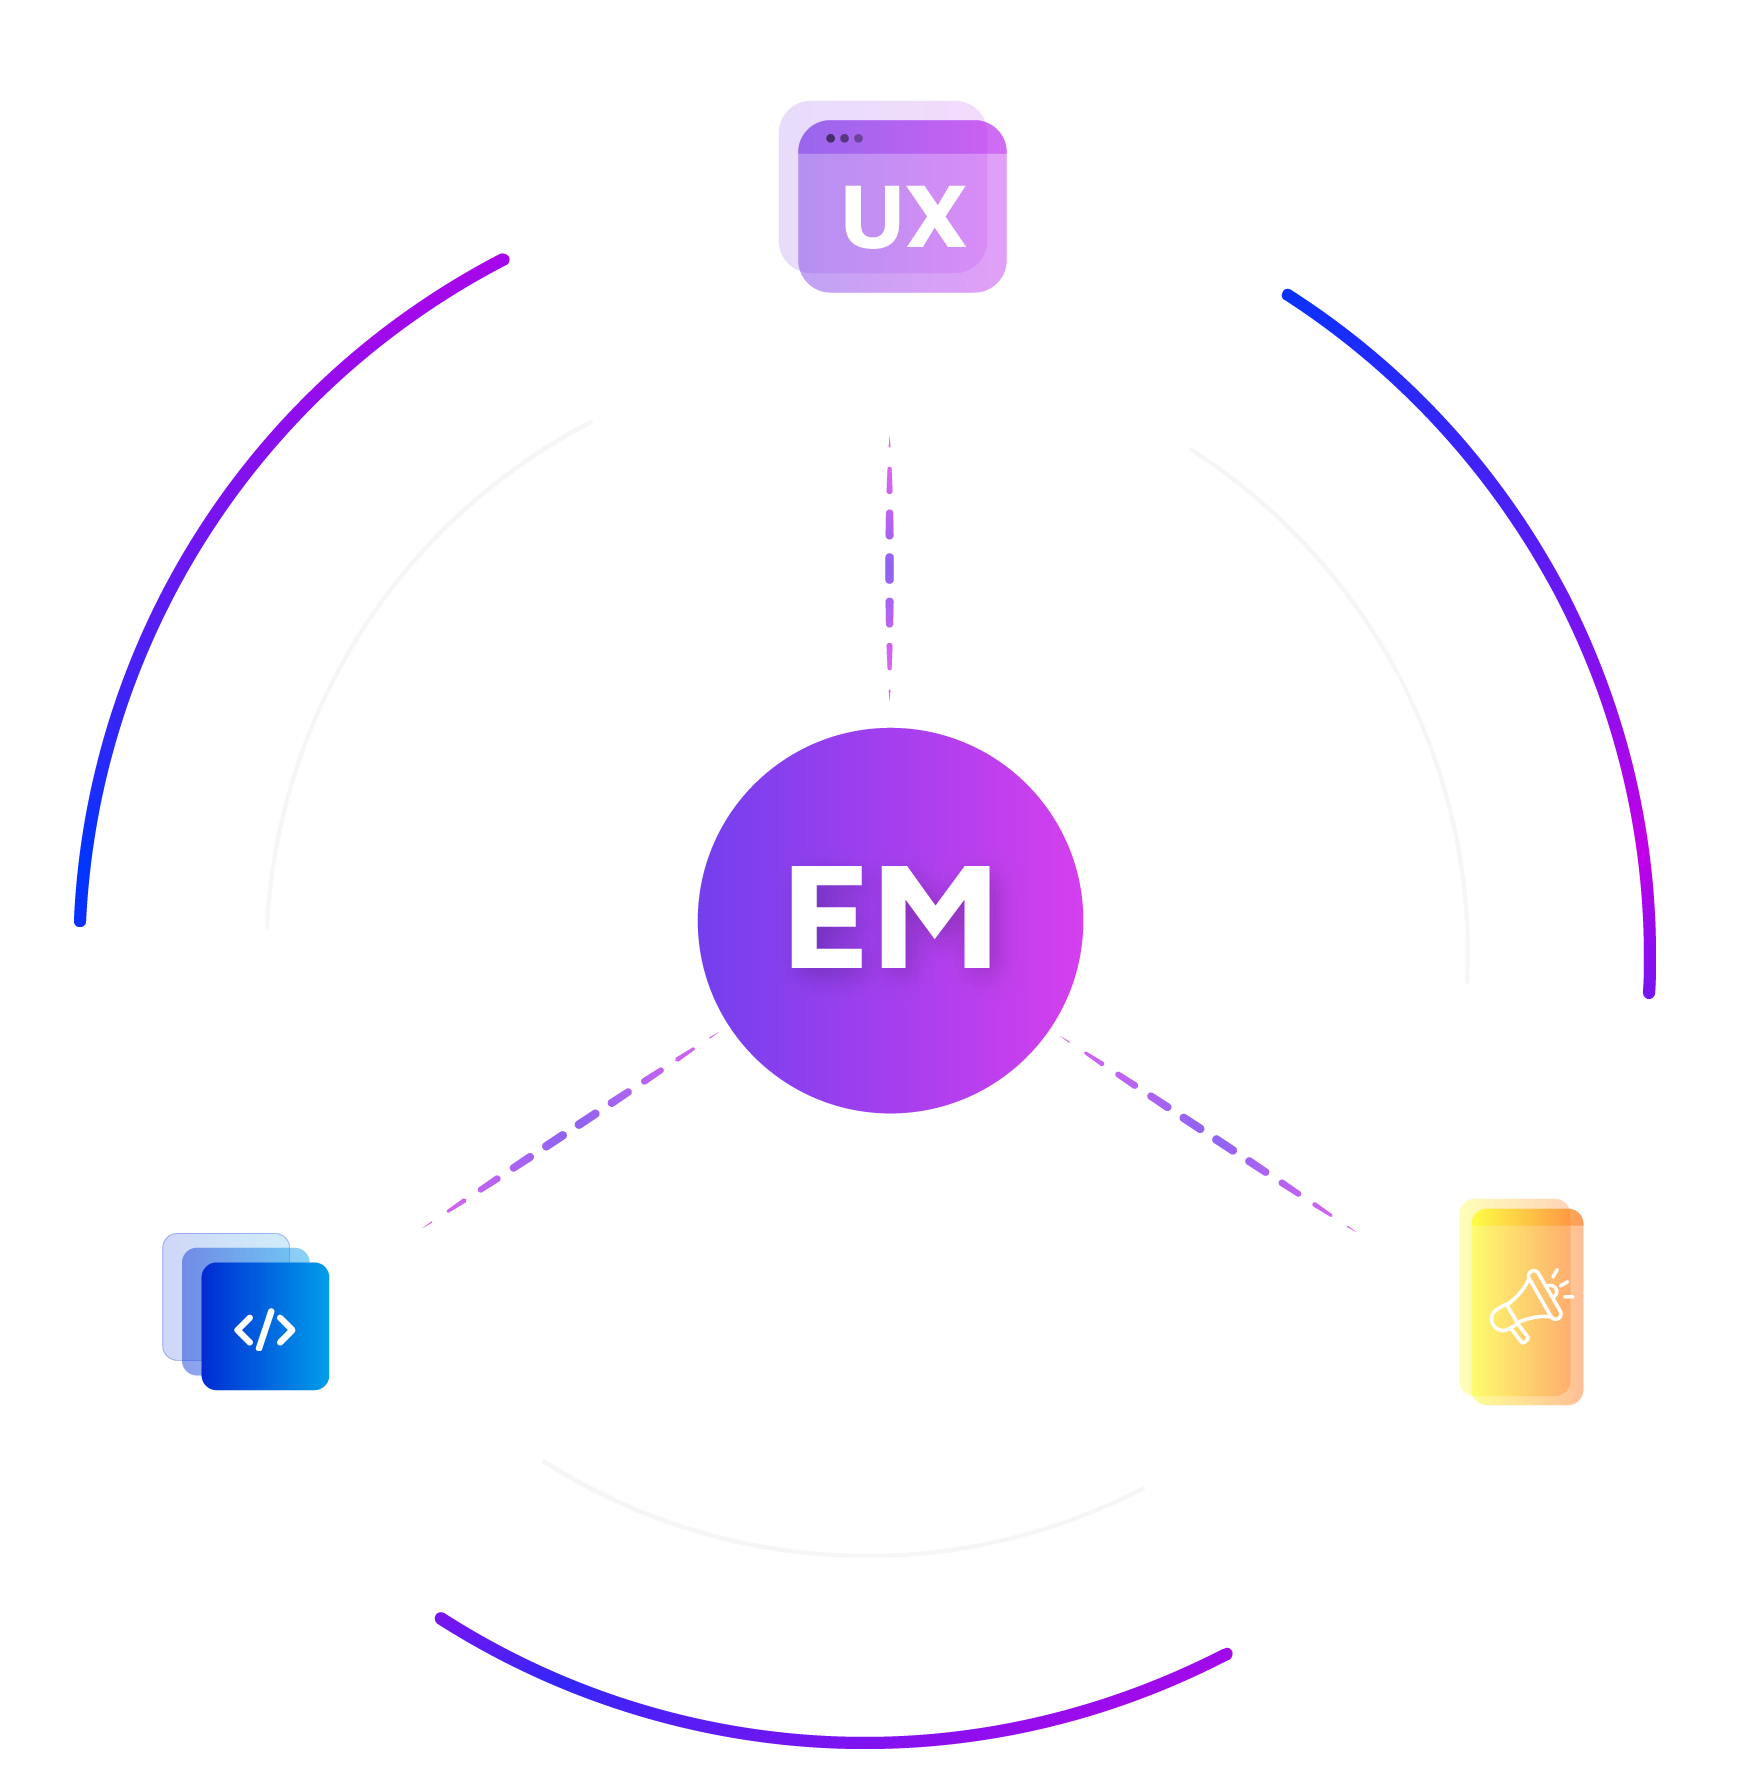 Illustration mit den Initialen 'EM' von Evoting Media in der Mitte, umgeben von einem Kreis aus Symbolen, die Entwicklung, UX Design und Marketing repräsentieren.